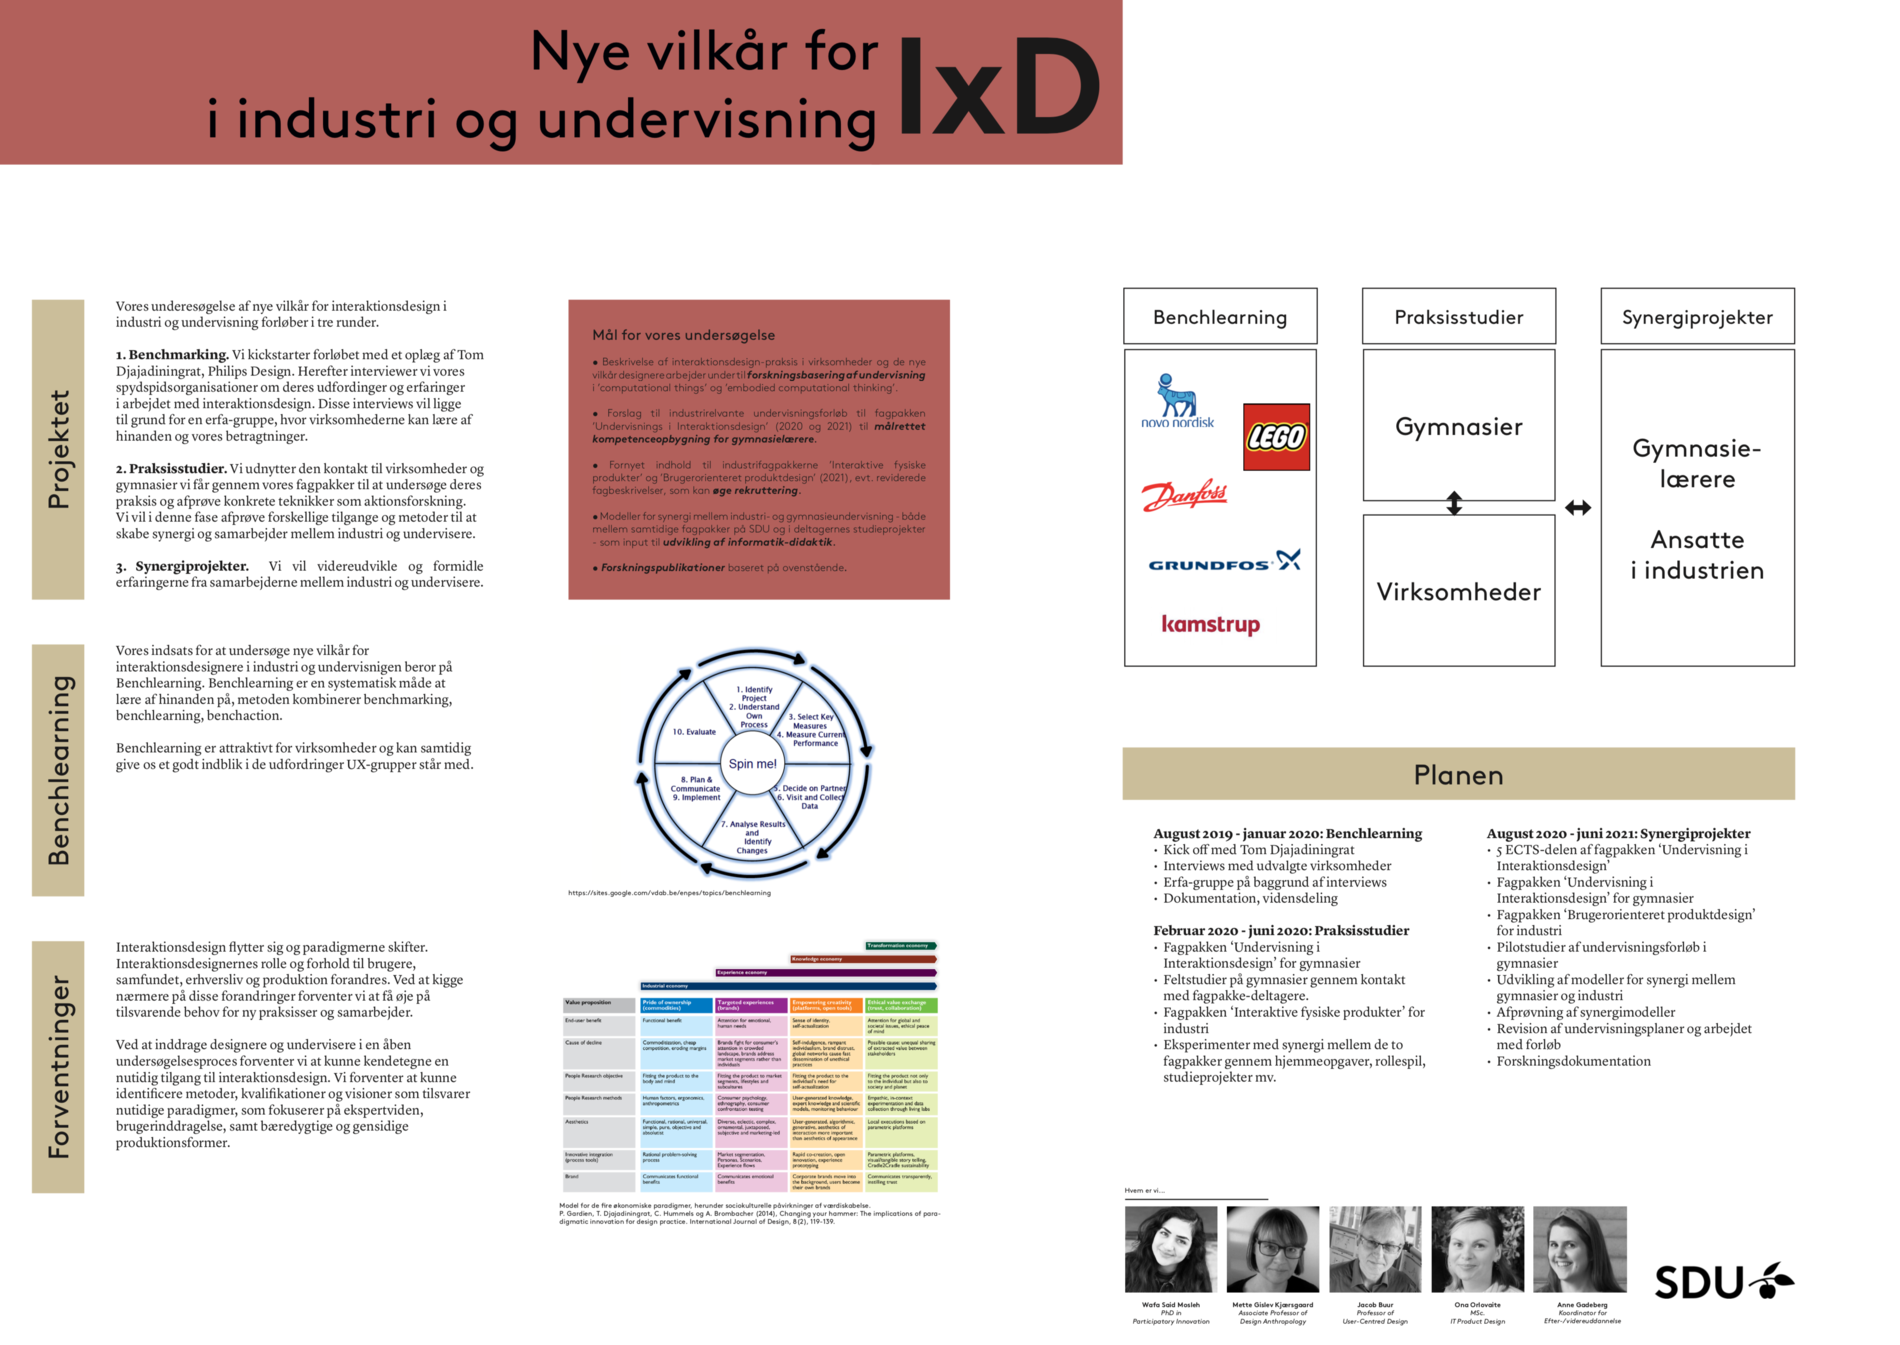 Link til pdf med poster for Nye vilkår for I&D i industri og undervisning, SDU